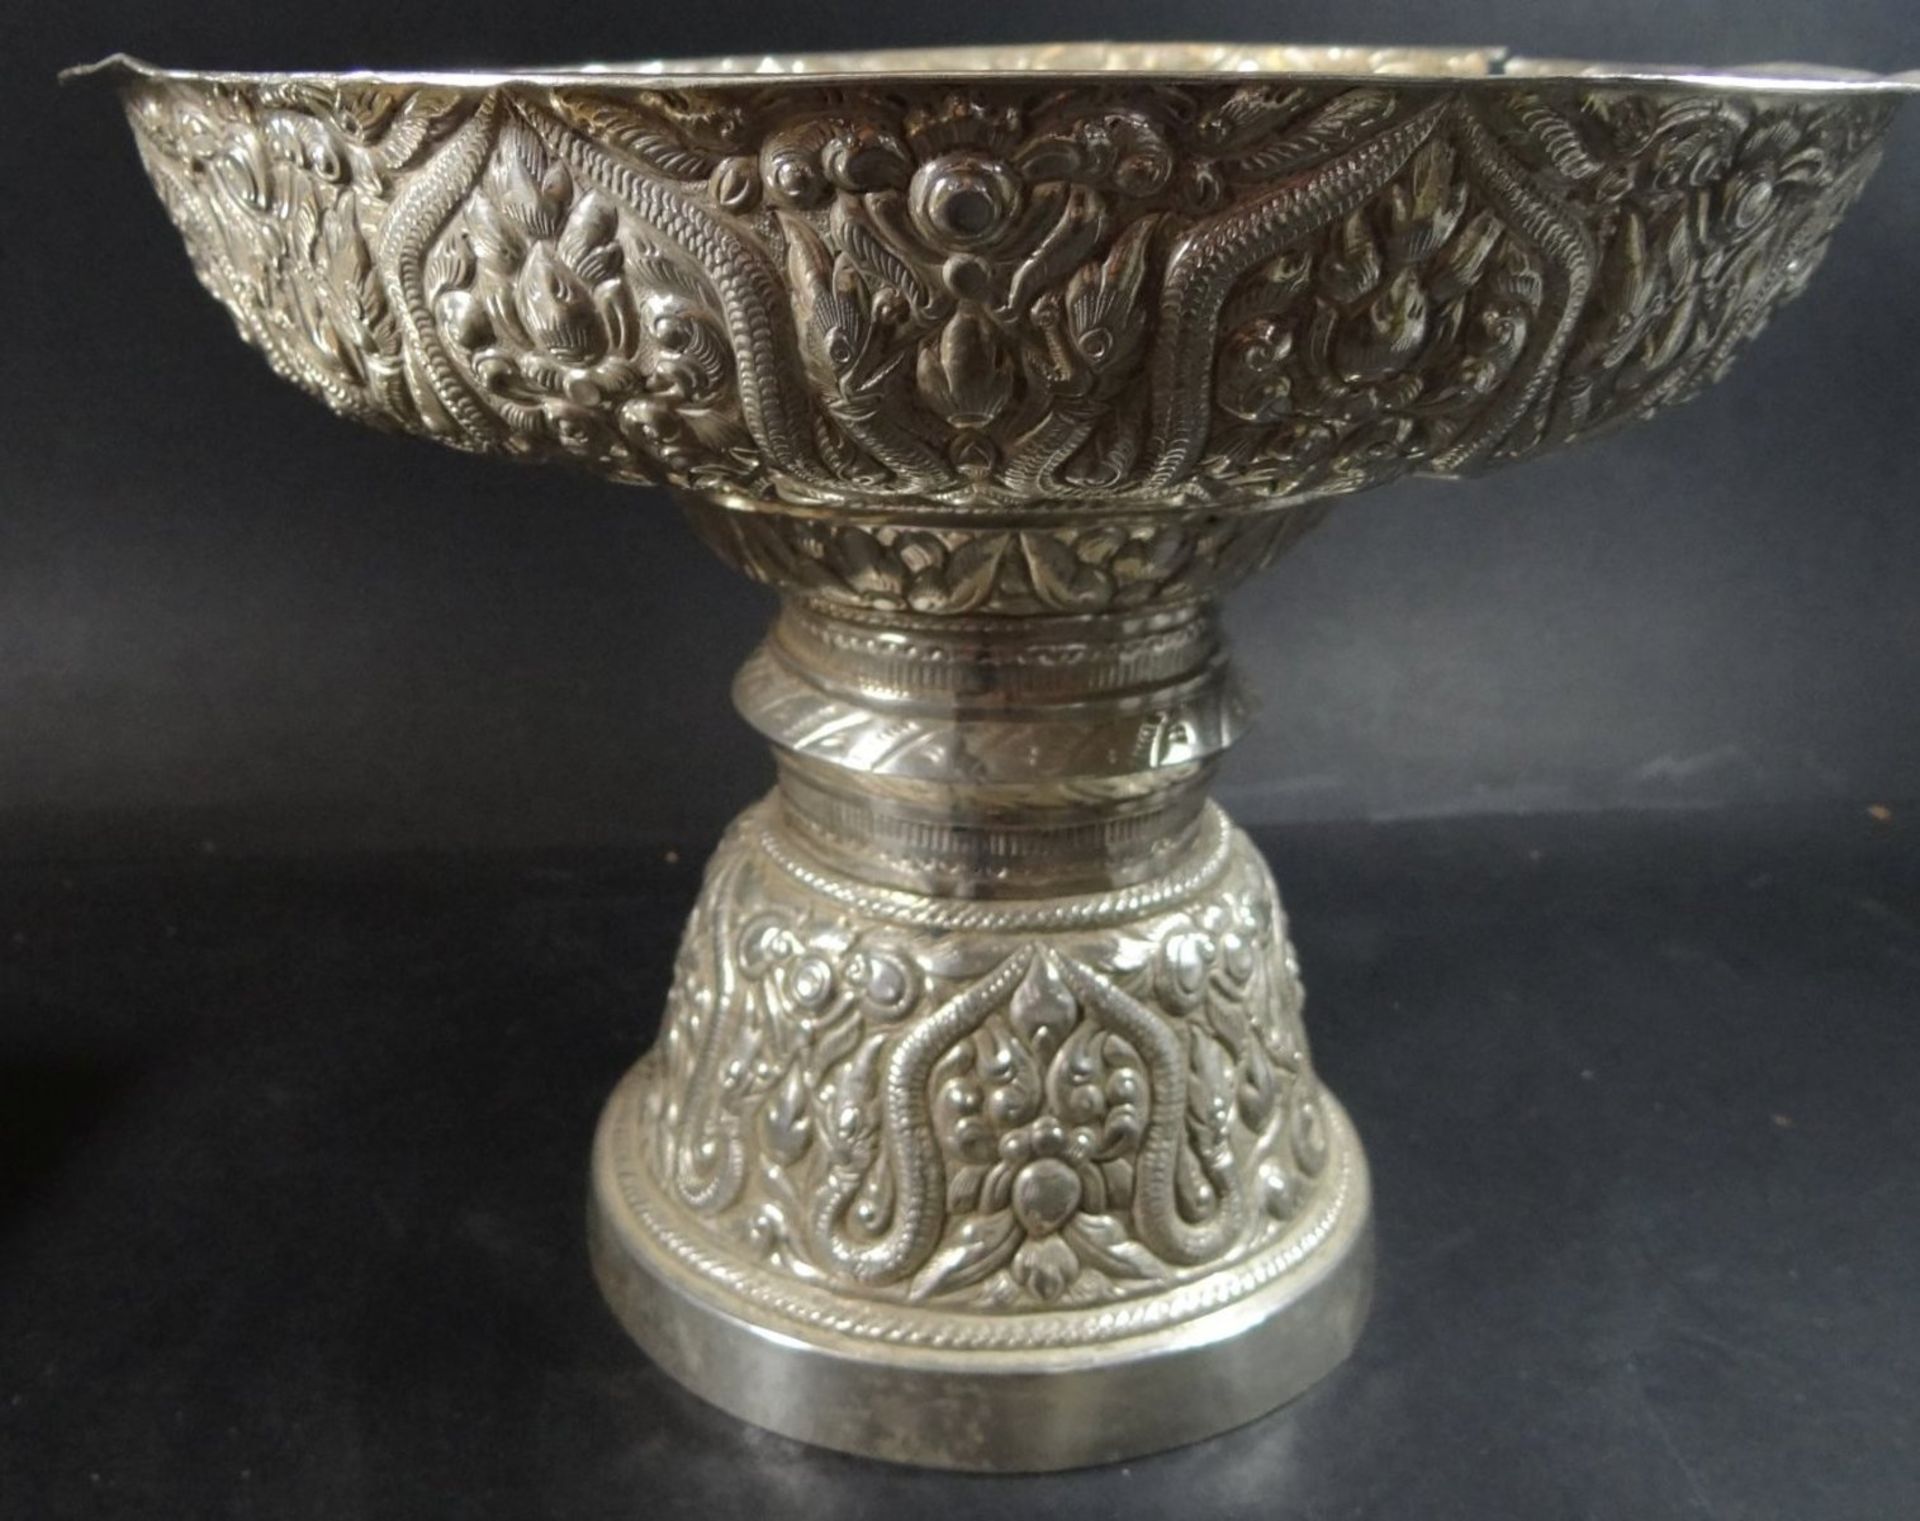 grosser Silber-Tafelaufsatz, wohl Zentralasien um 1800, reich getriebenes florales Dekor, Rand